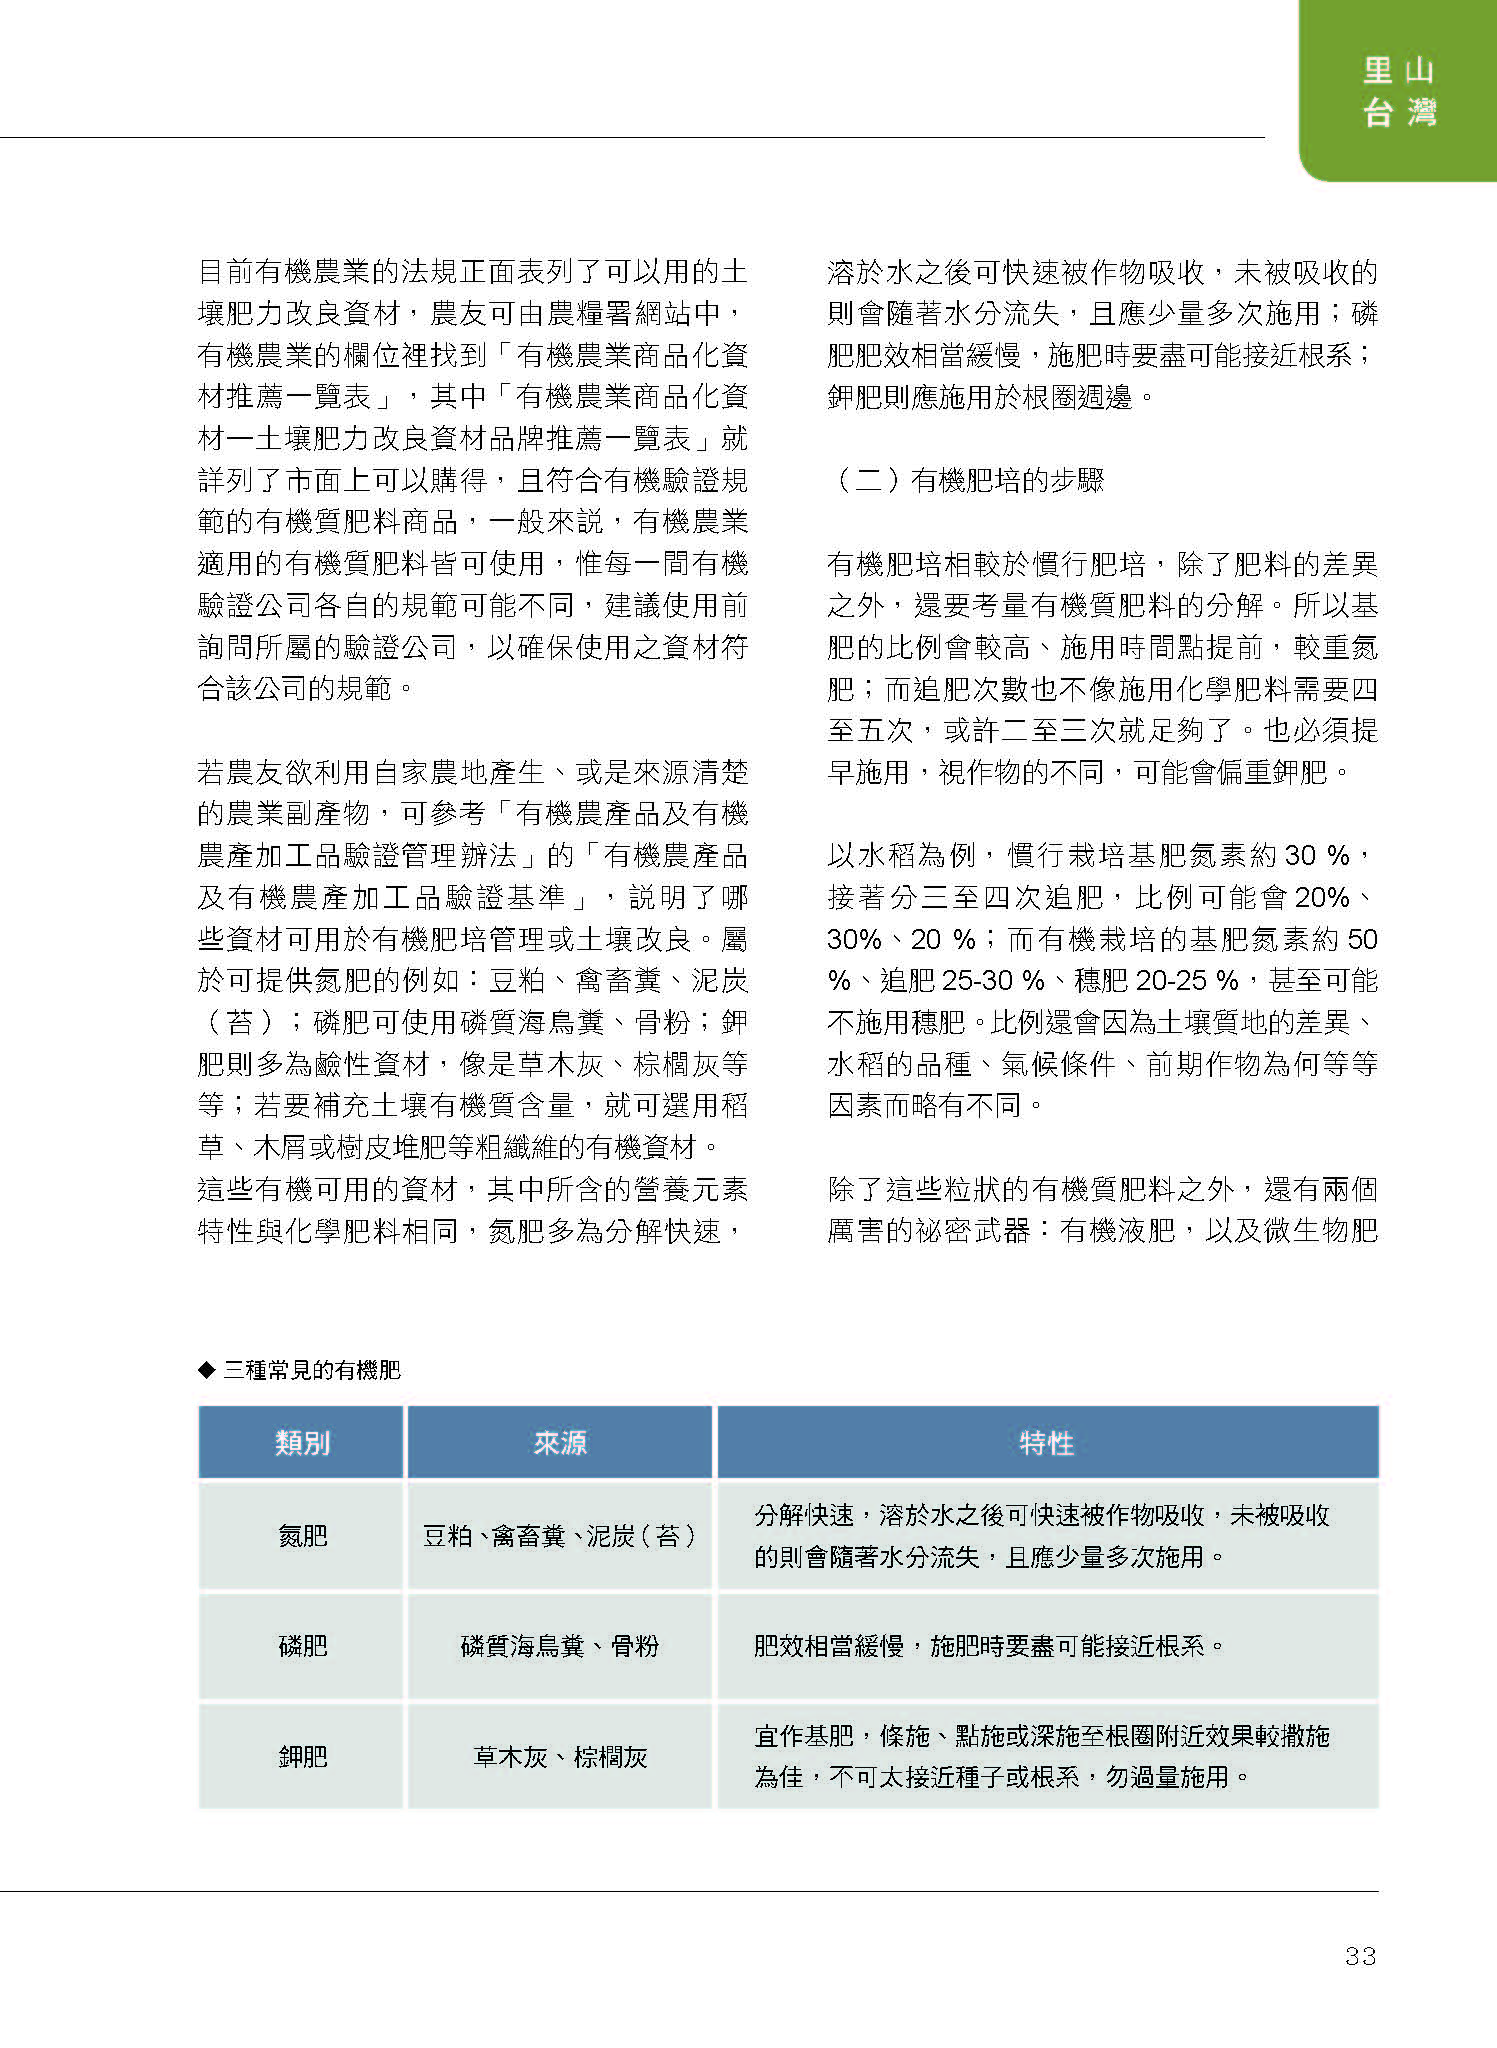 里山台灣－專欄2－研究與現場:有機栽培的土壤肥力管理-4